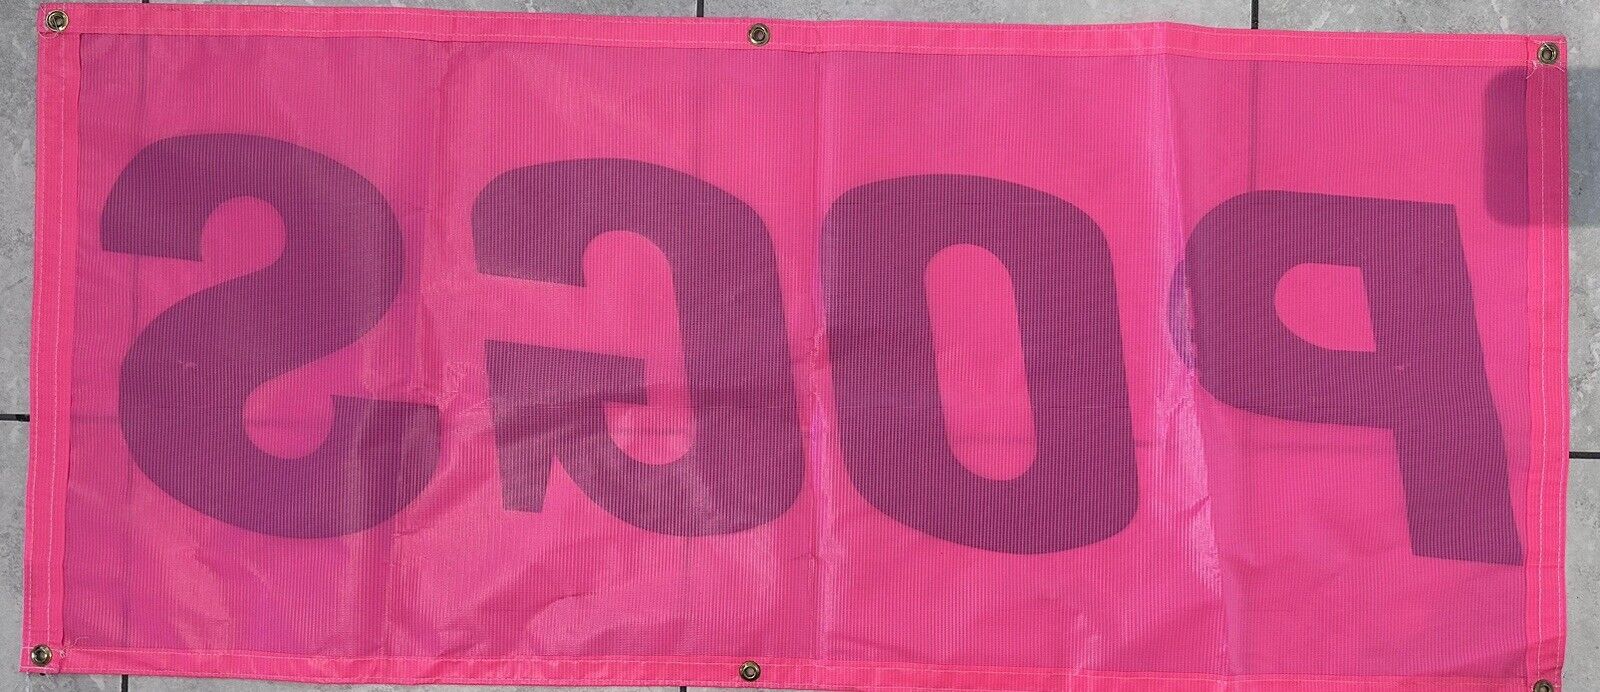 Vintage 1990s Pogs Tournament Store Pink Banner 49.5"x21.5" - Excellent Condition Retro Decor - TreasuTiques